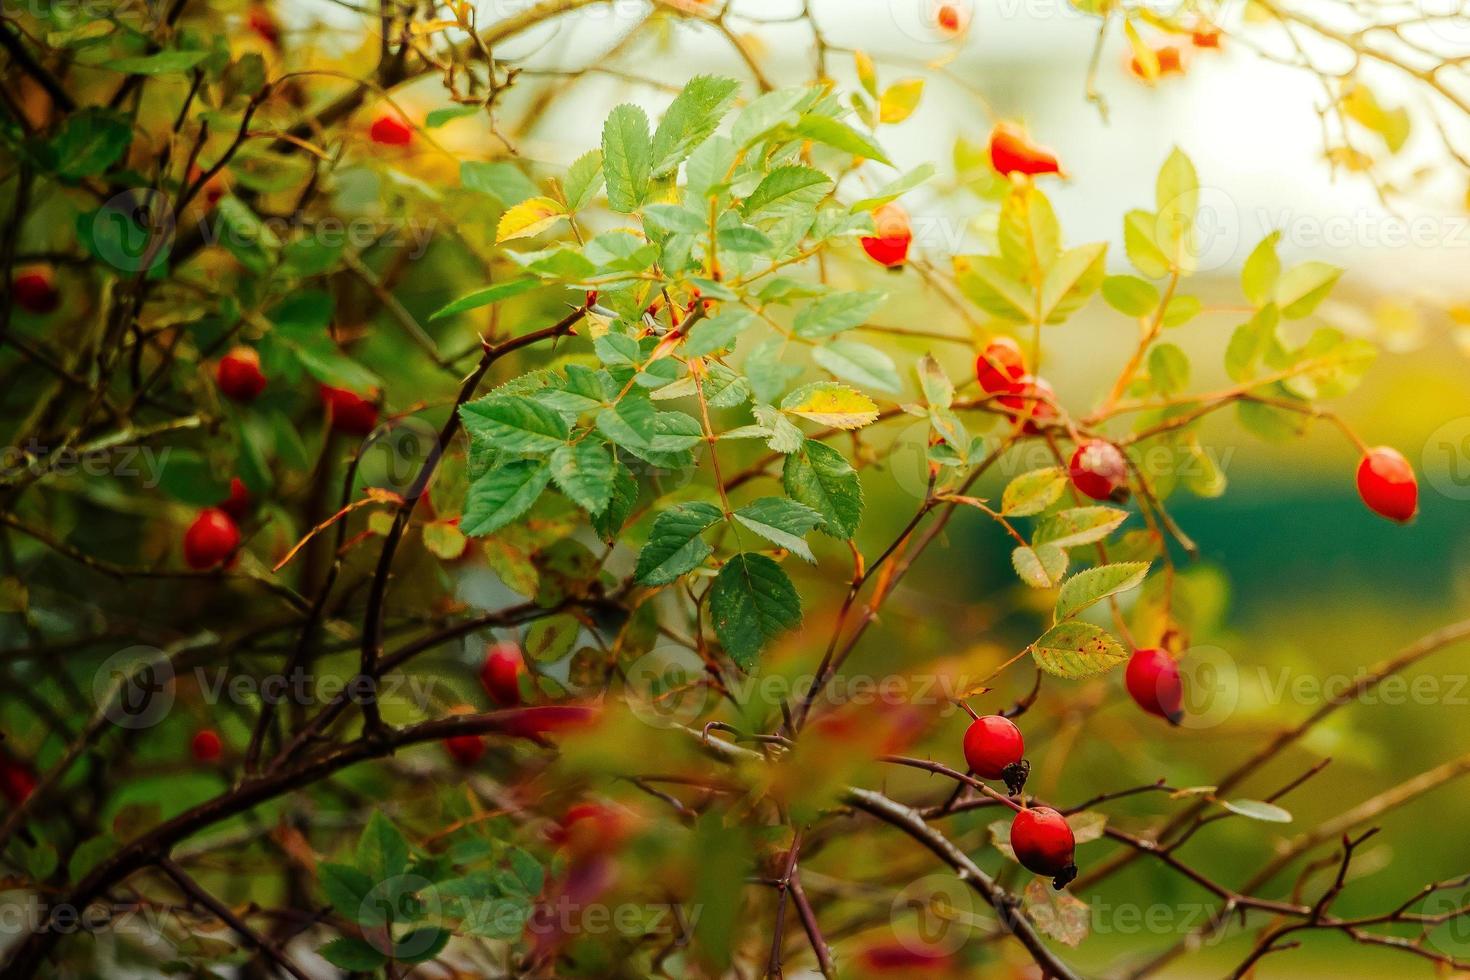 schöner Hagebuttenbusch an einem sonnigen Herbsttag foto